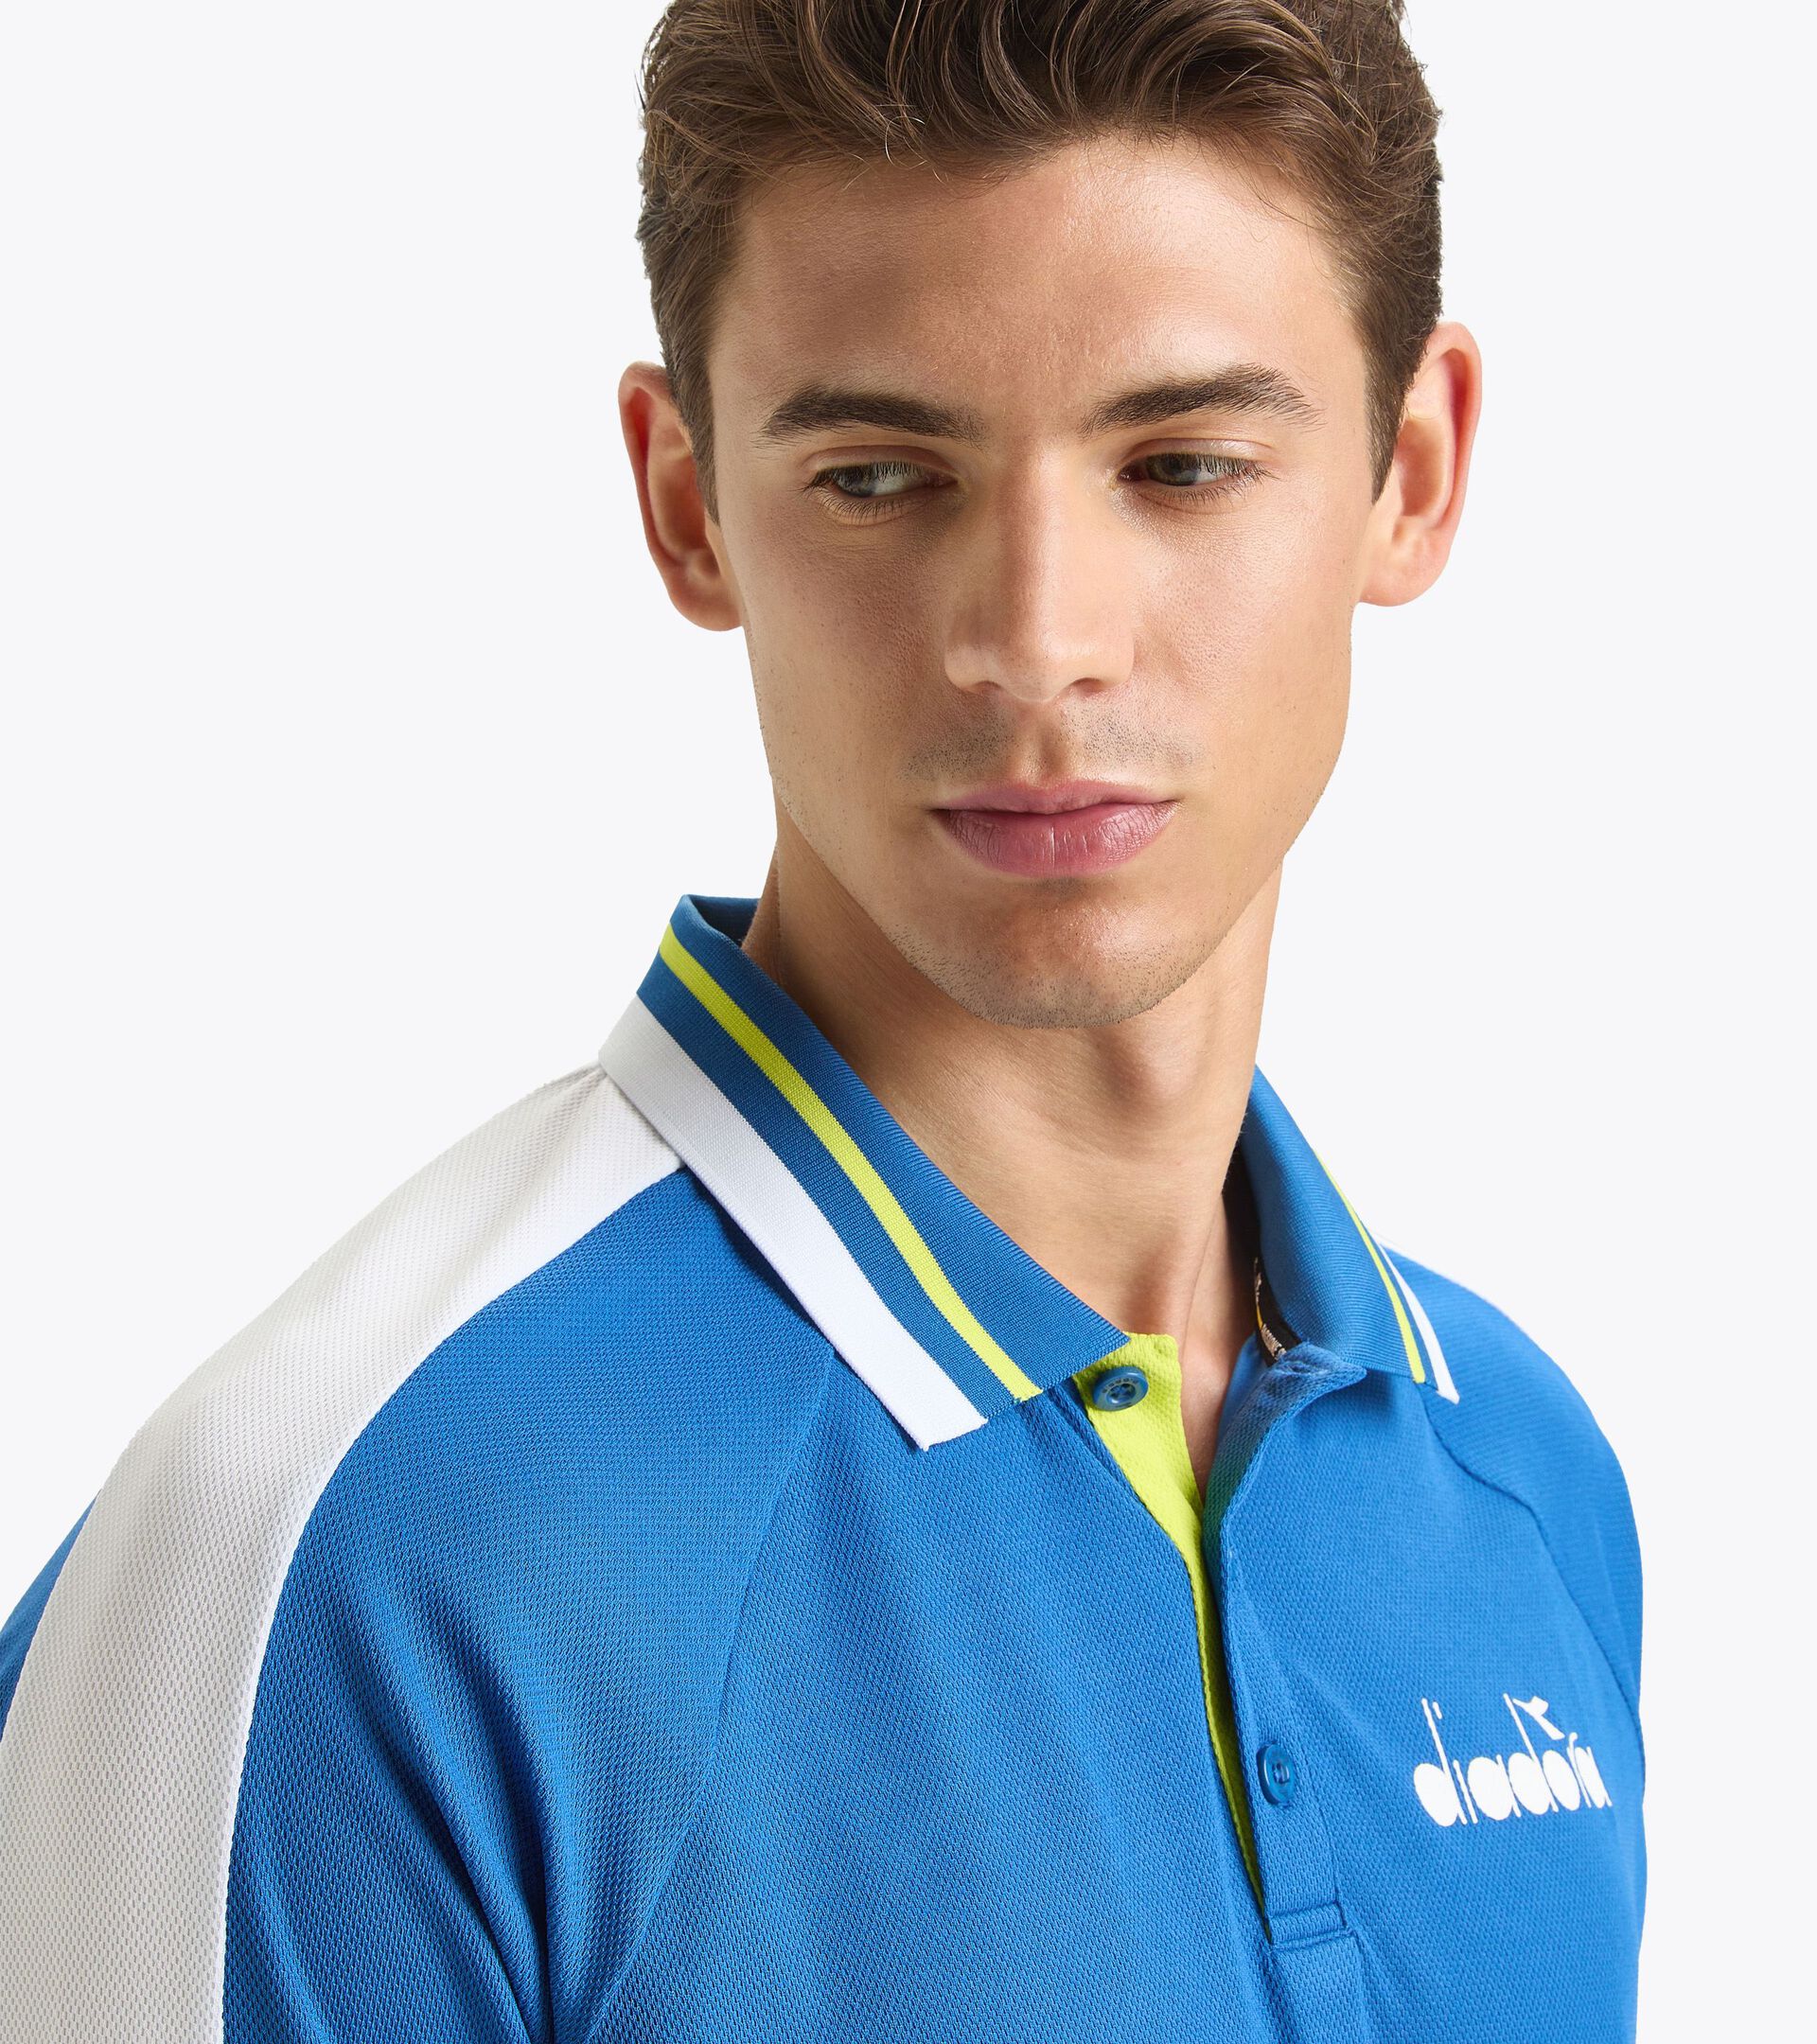 Tennis polo shirt - Men SS POLO ICON DEJA VU BLUE - Diadora